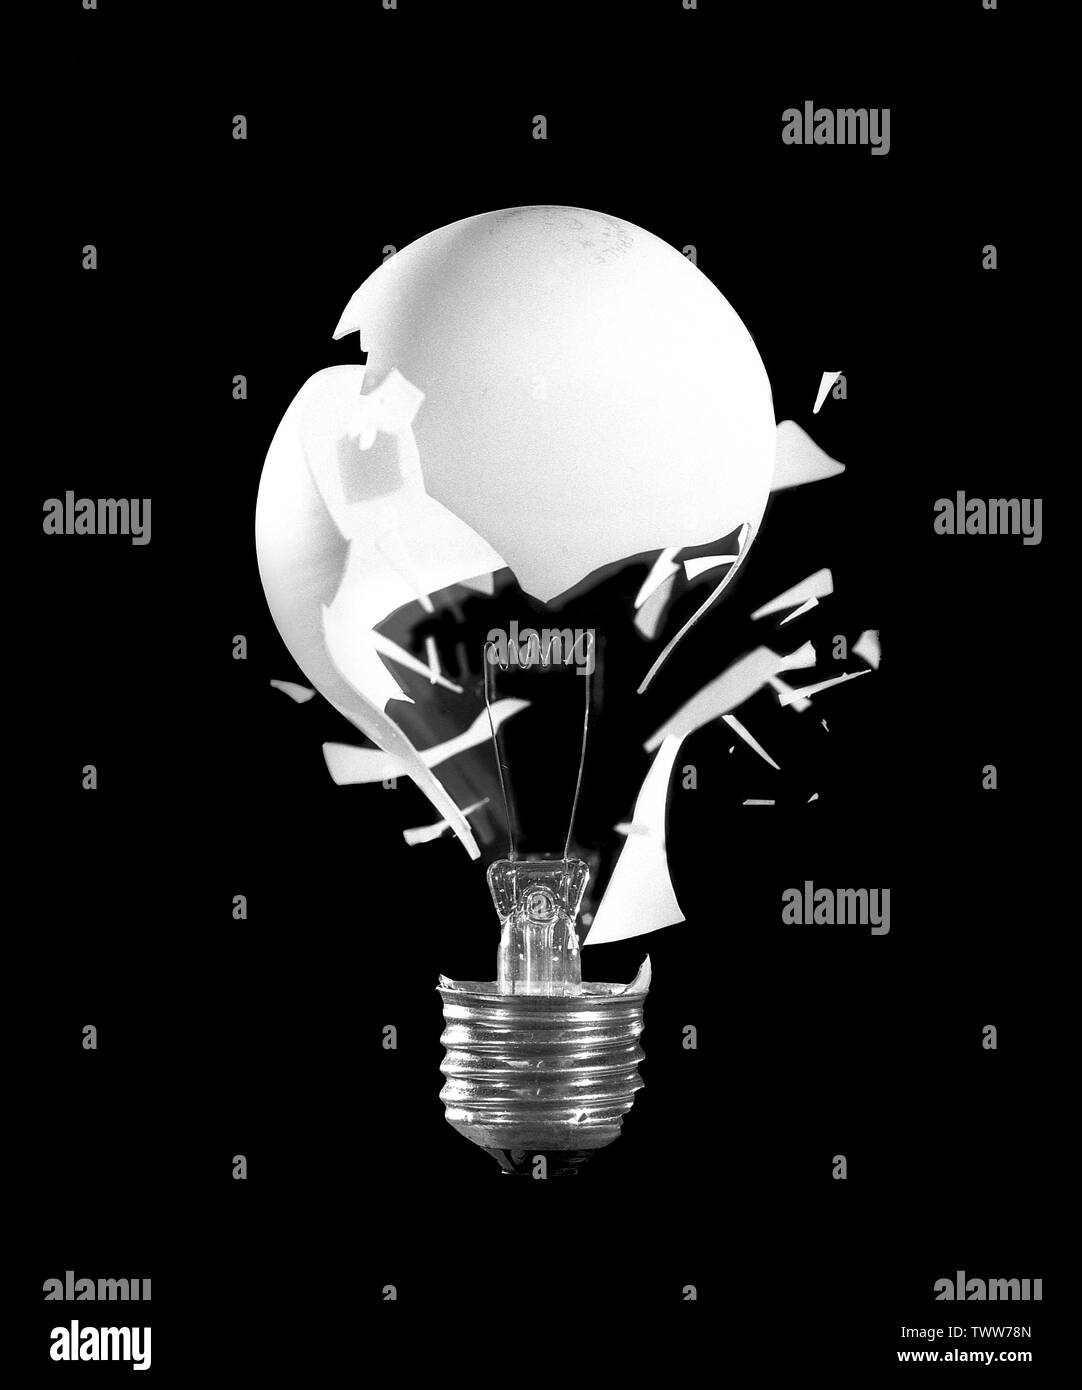 Eine explodierende Glühbirne dient als Metapher für disruptive, kreative Ideen. Stockfoto